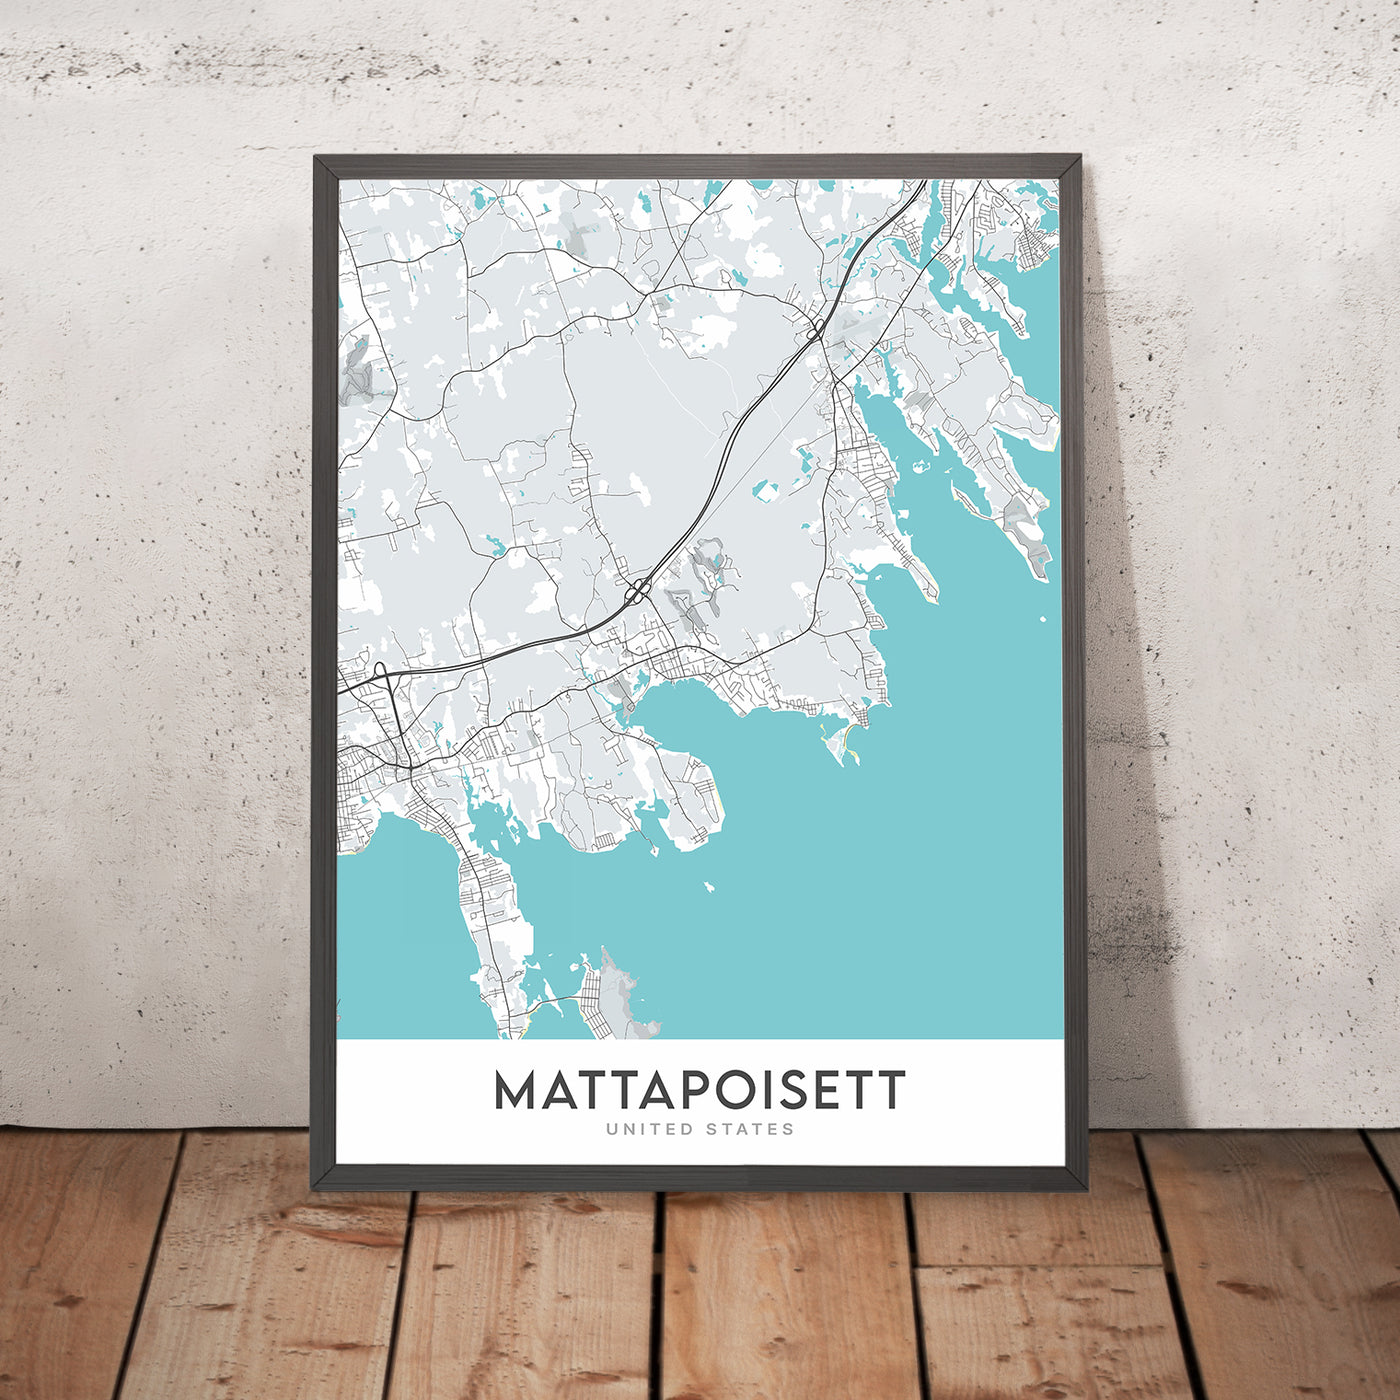 Moderner Stadtplan von Mattapoisett, MA: Mattapoisett Center, Mattapoisett Neck, North Mattapoisett, Mattapoisett Town Hall, Mattapoisett Free Public Library